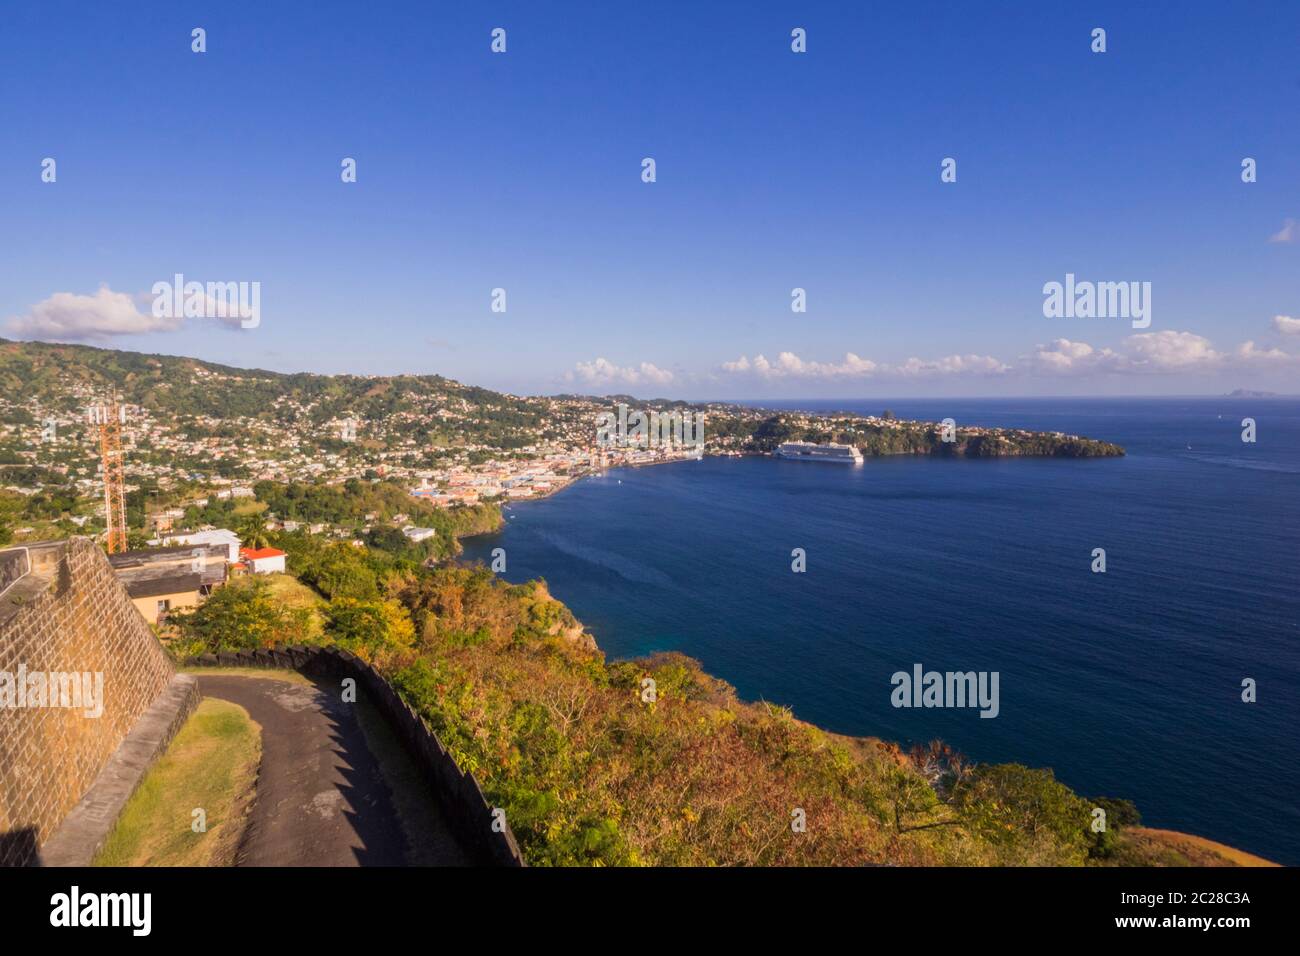 St. Vincent und die Grenadinen in der Karibik - Hafen in Kingstown Stockfoto